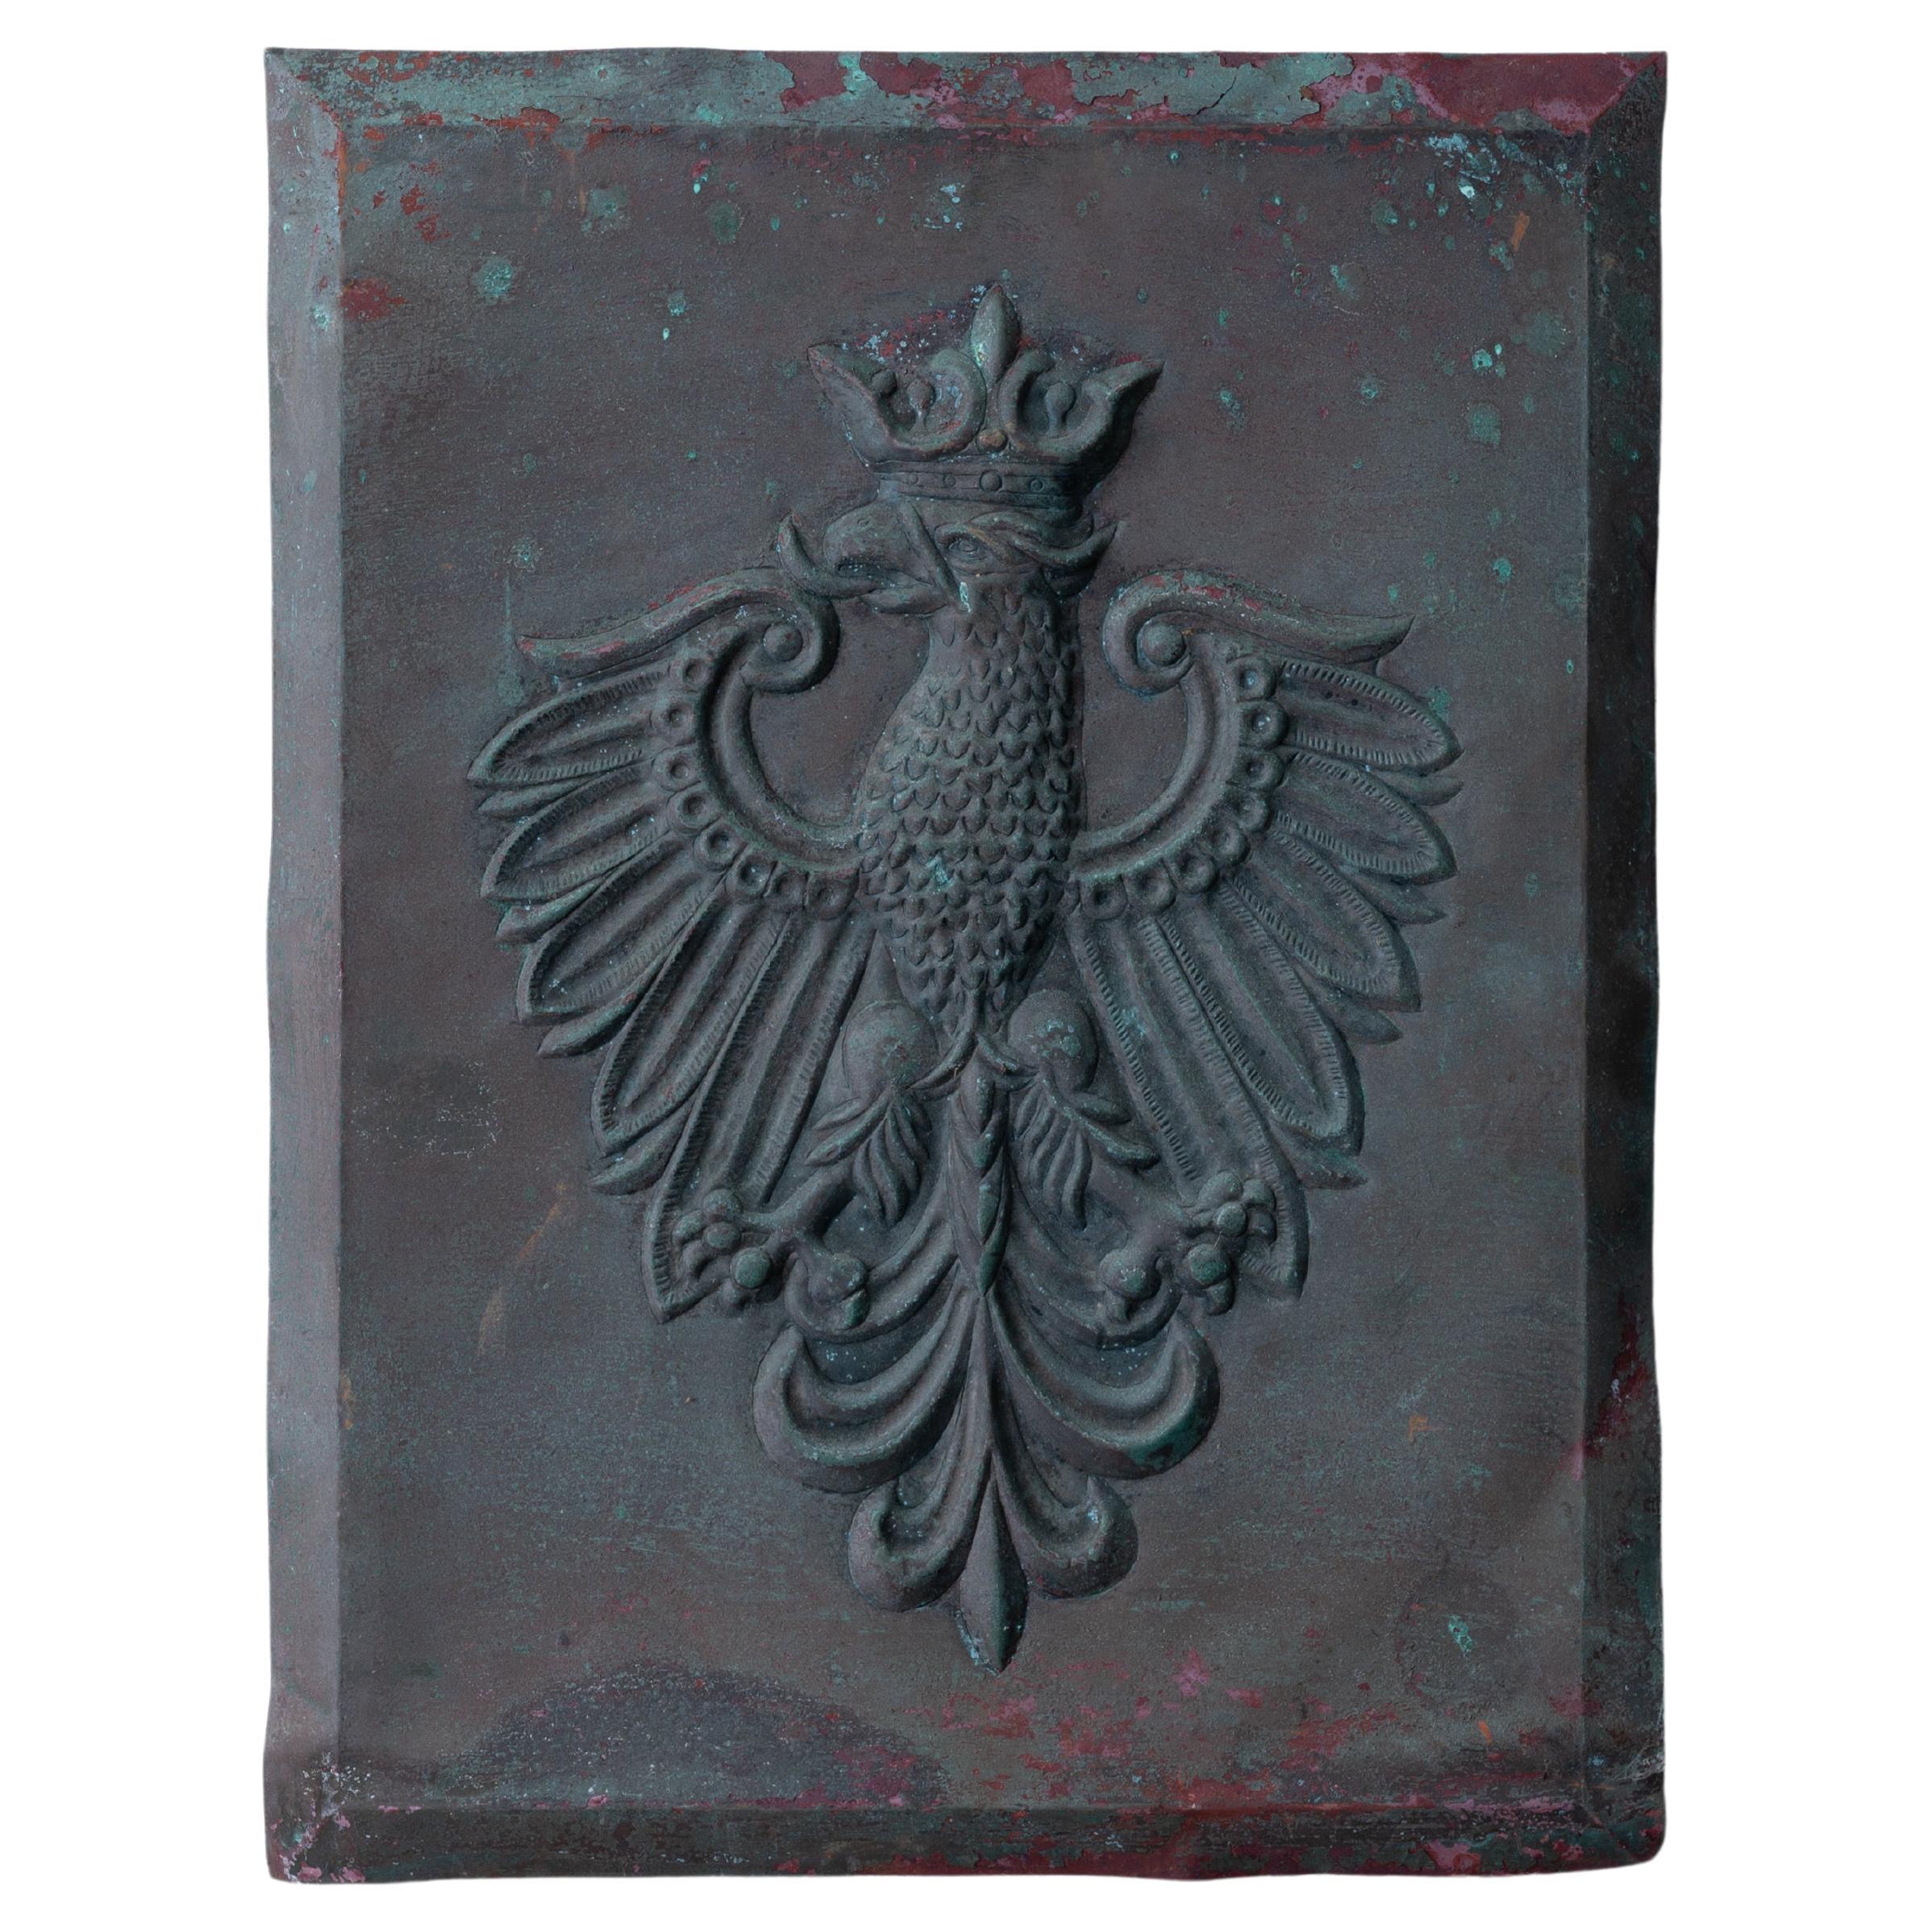 Polnische Wappenreliefplakette aus Kupfer, Anfang des 20. Jahrhunderts.

16 ½ mal 22 Zoll
